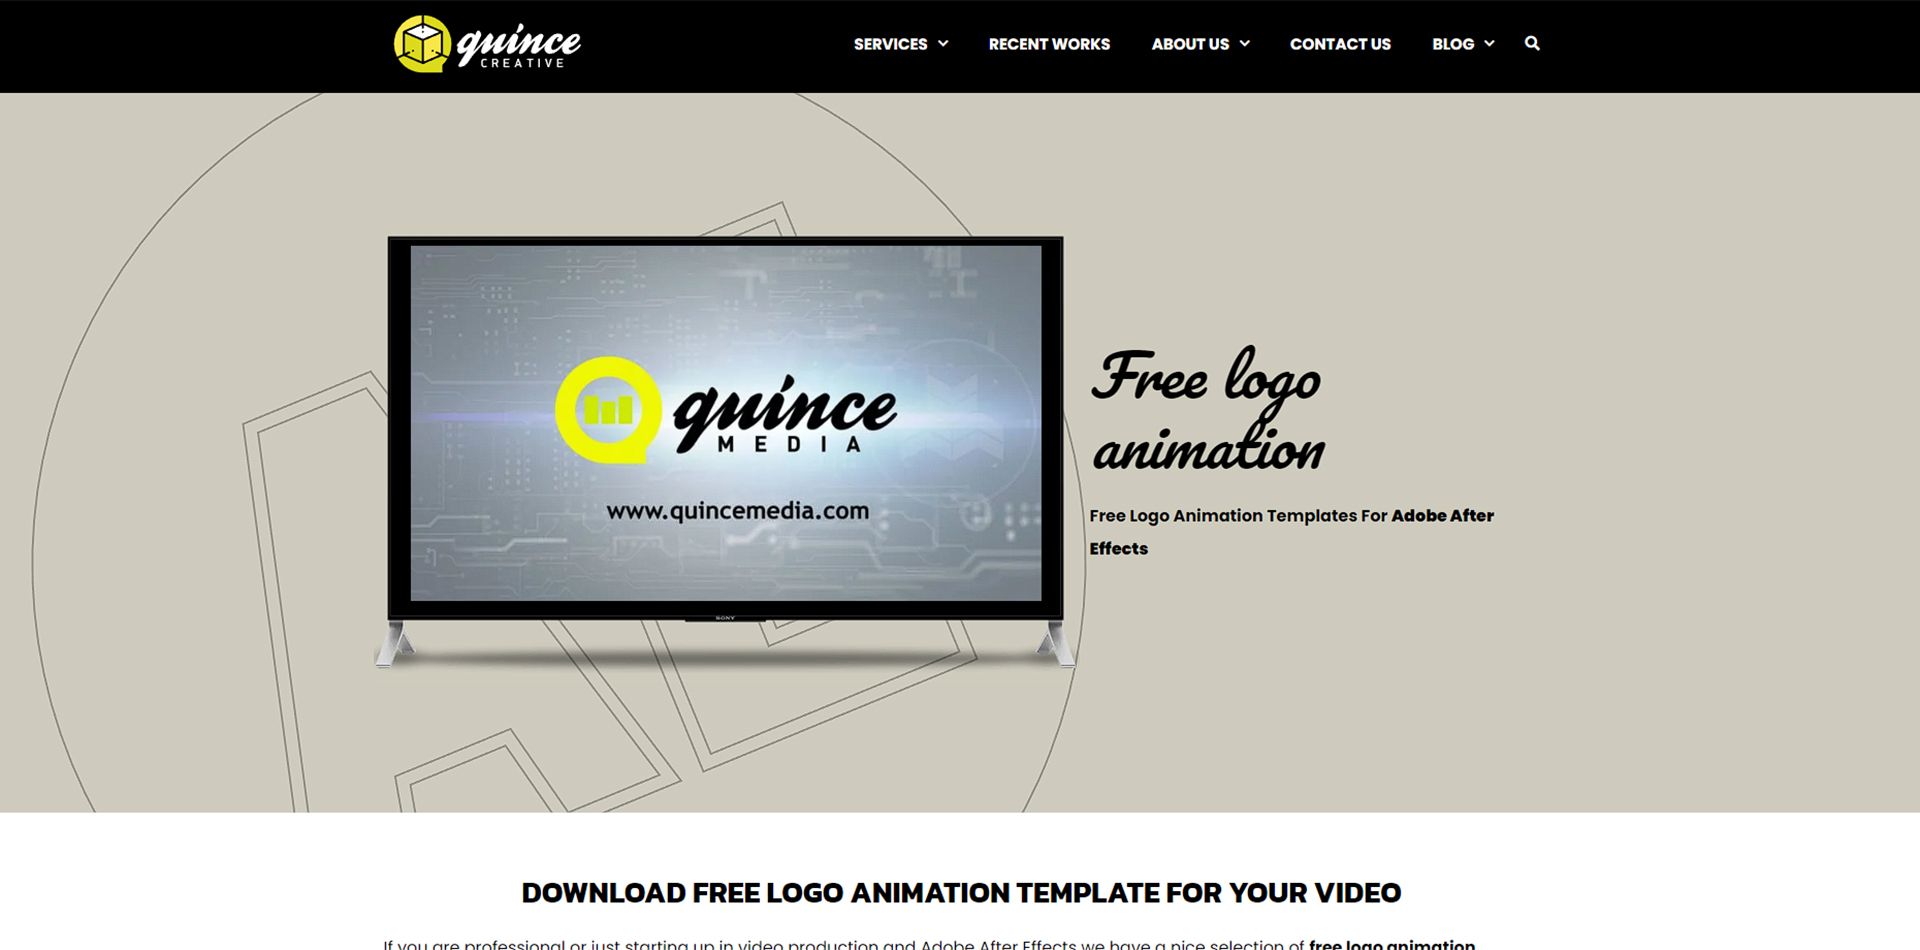 صفحه اول سایت Quince که مانیتور دستگاهی را نشان می دهد که لوگوی سایت در آن دیده می شود